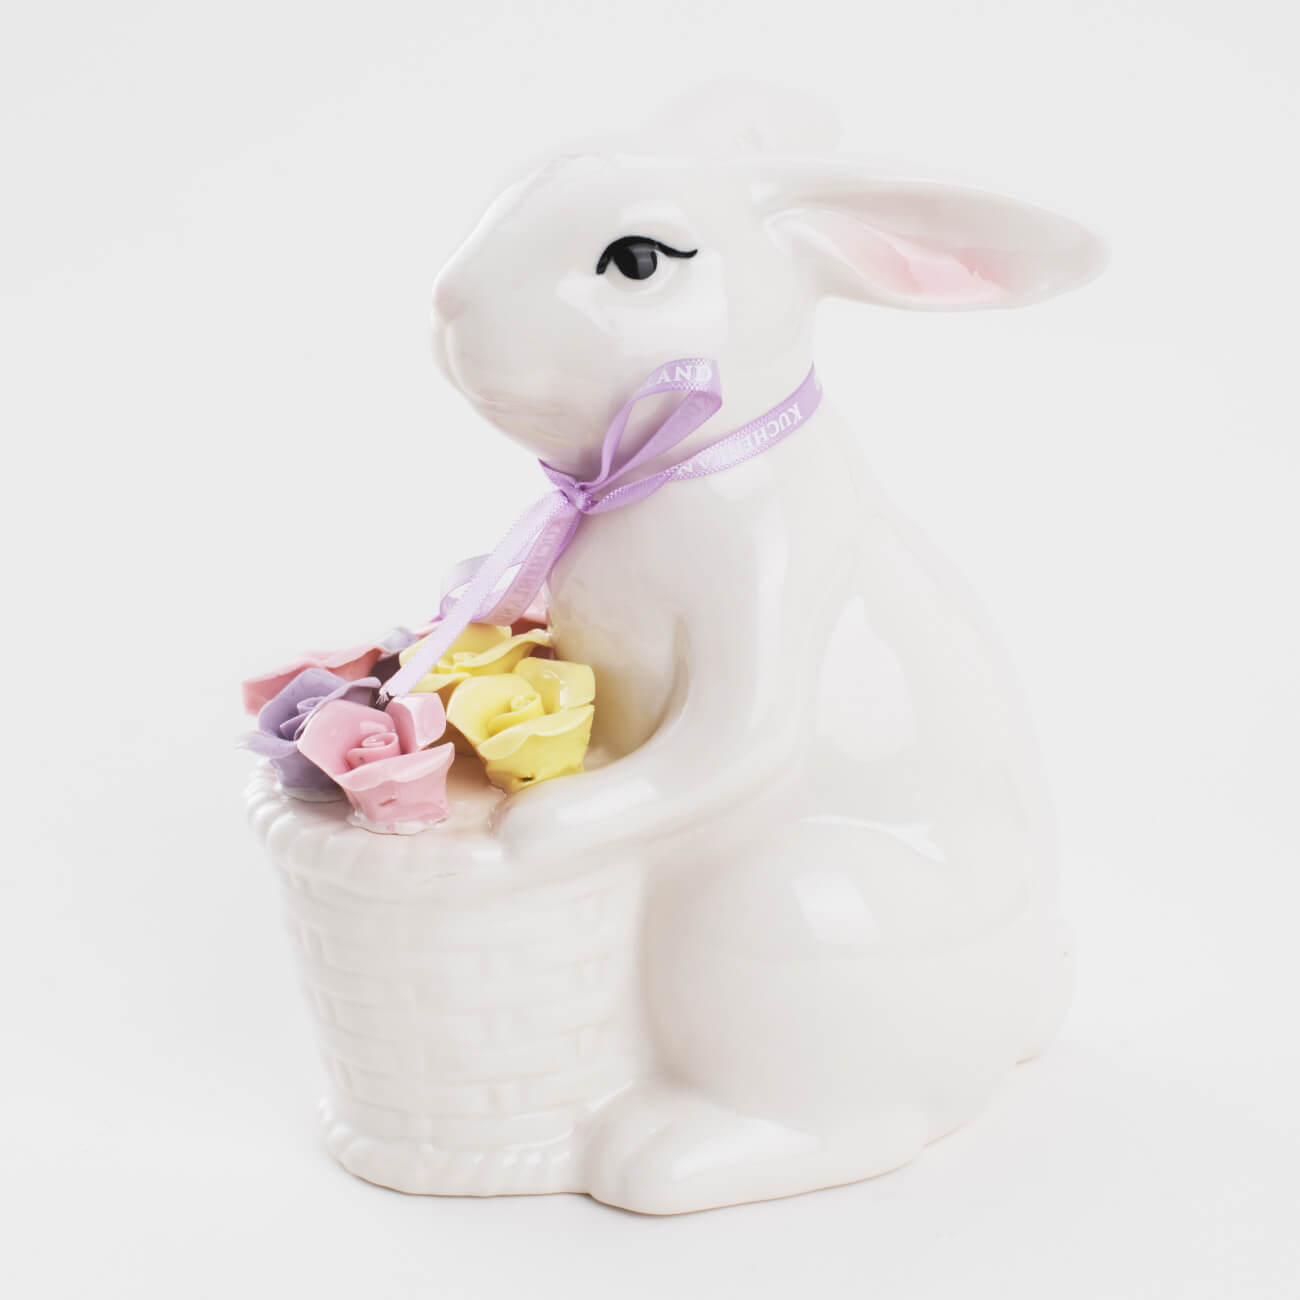 тарелка закусочная 23 см фарфор n кролик c ами pure easter Статуэтка, 17 см, фарфор P, белая, Кролик с корзиной цветов, Pure Easter